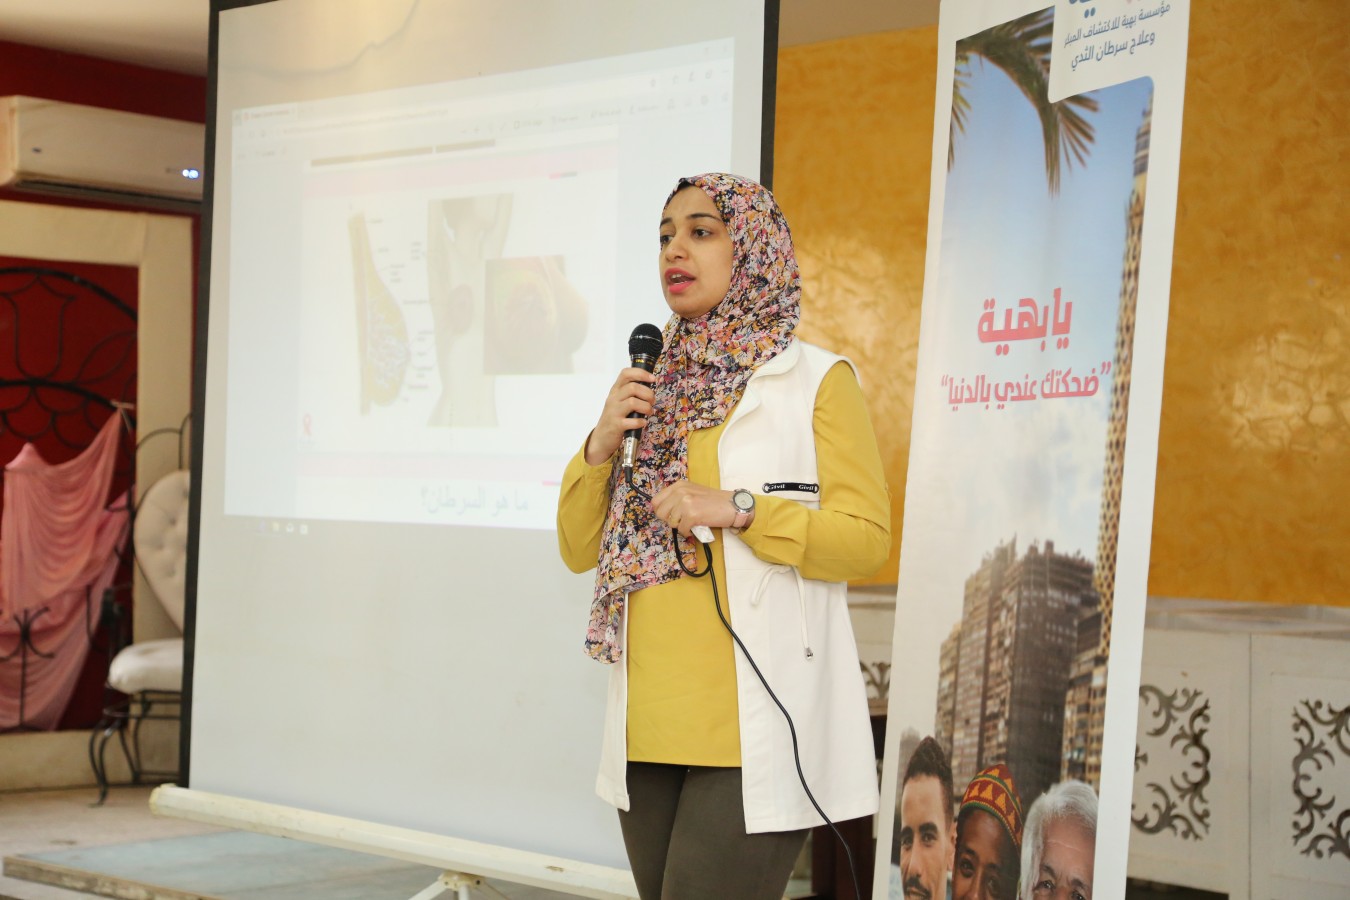 مؤسسة بهية هي مؤسسة تقوم بعلاج المرضى من سرطان الثدي بالمجان، وإلى جانب ذلك فإنها تقوم بتقديم ندوات التوعية في مختلف قرى ومحافظات مصر